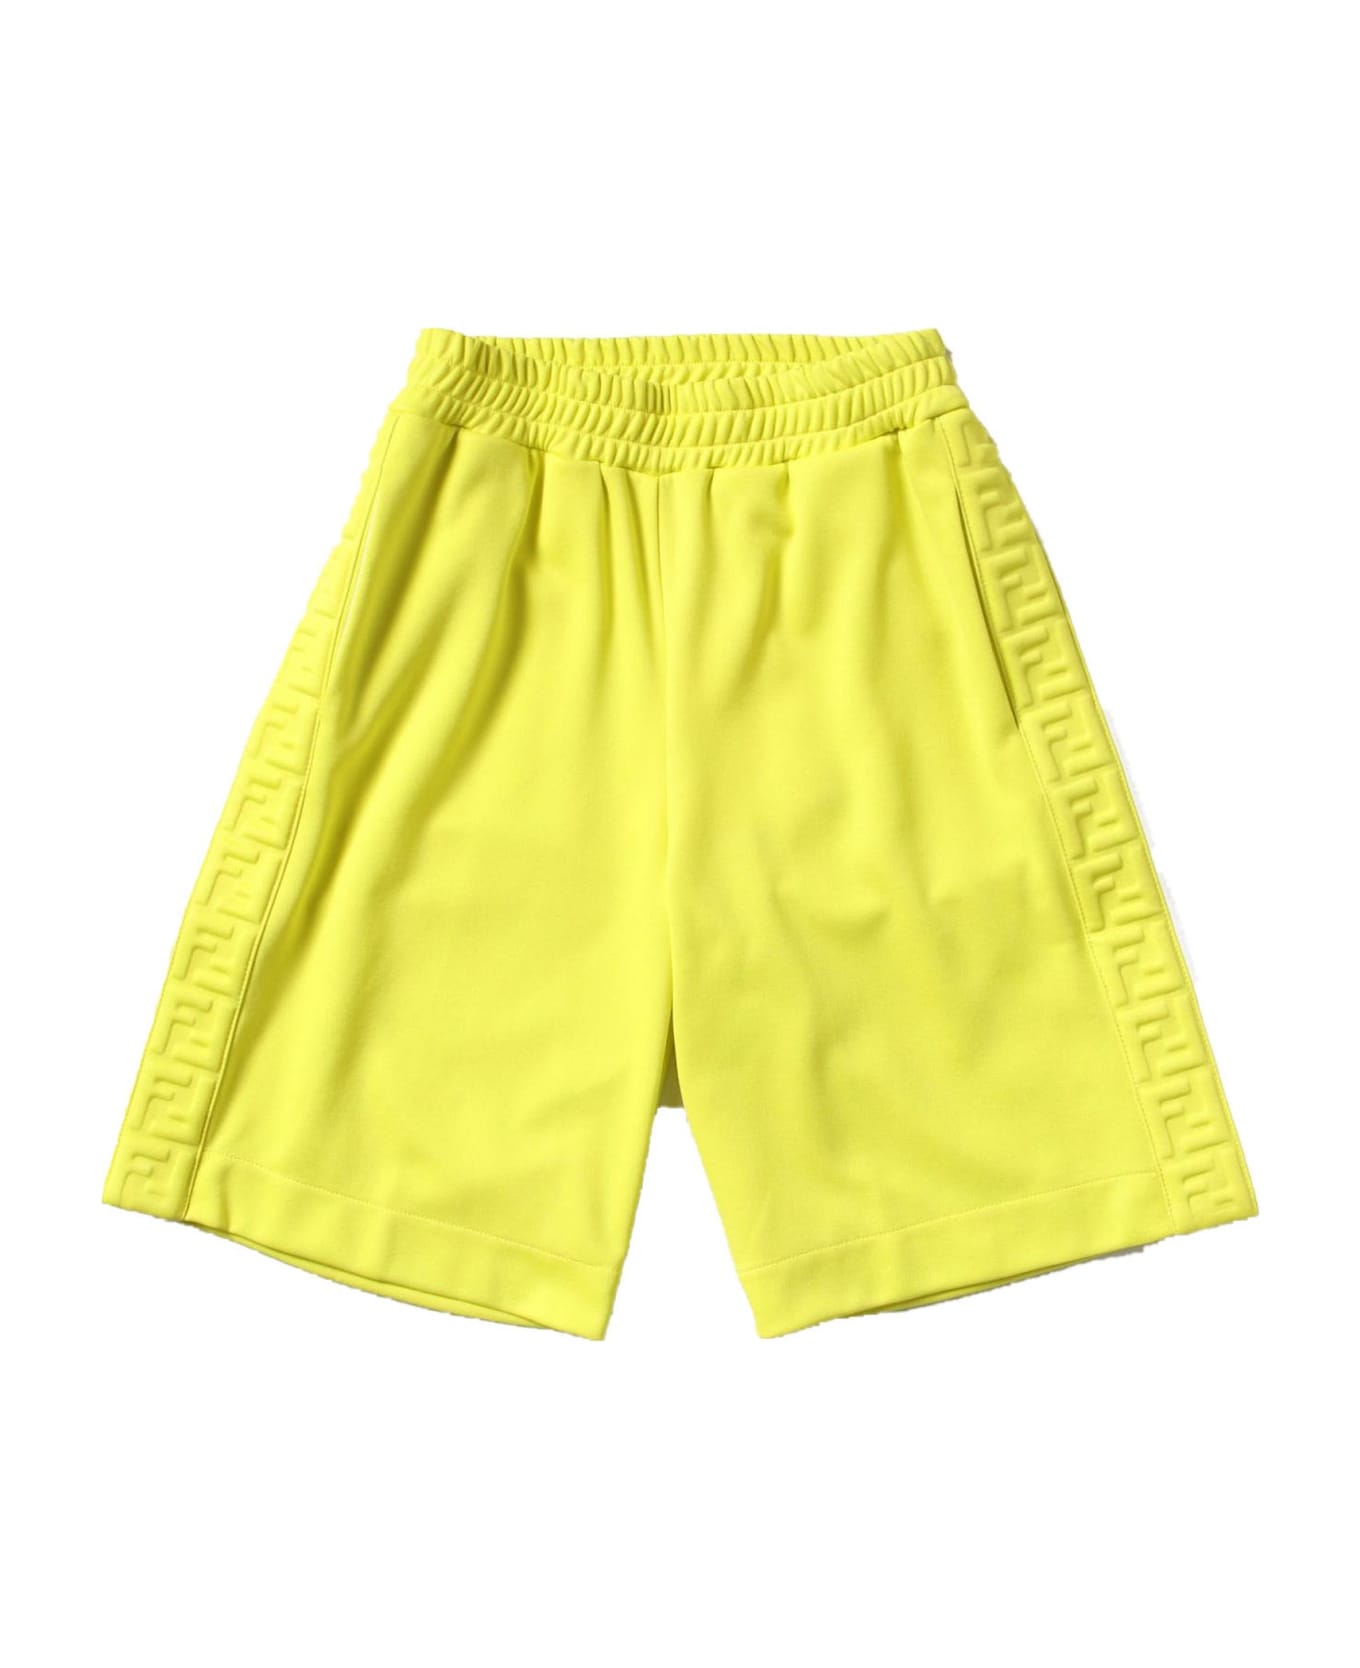 Fendi Yellow Cotton Shorts - Giallo